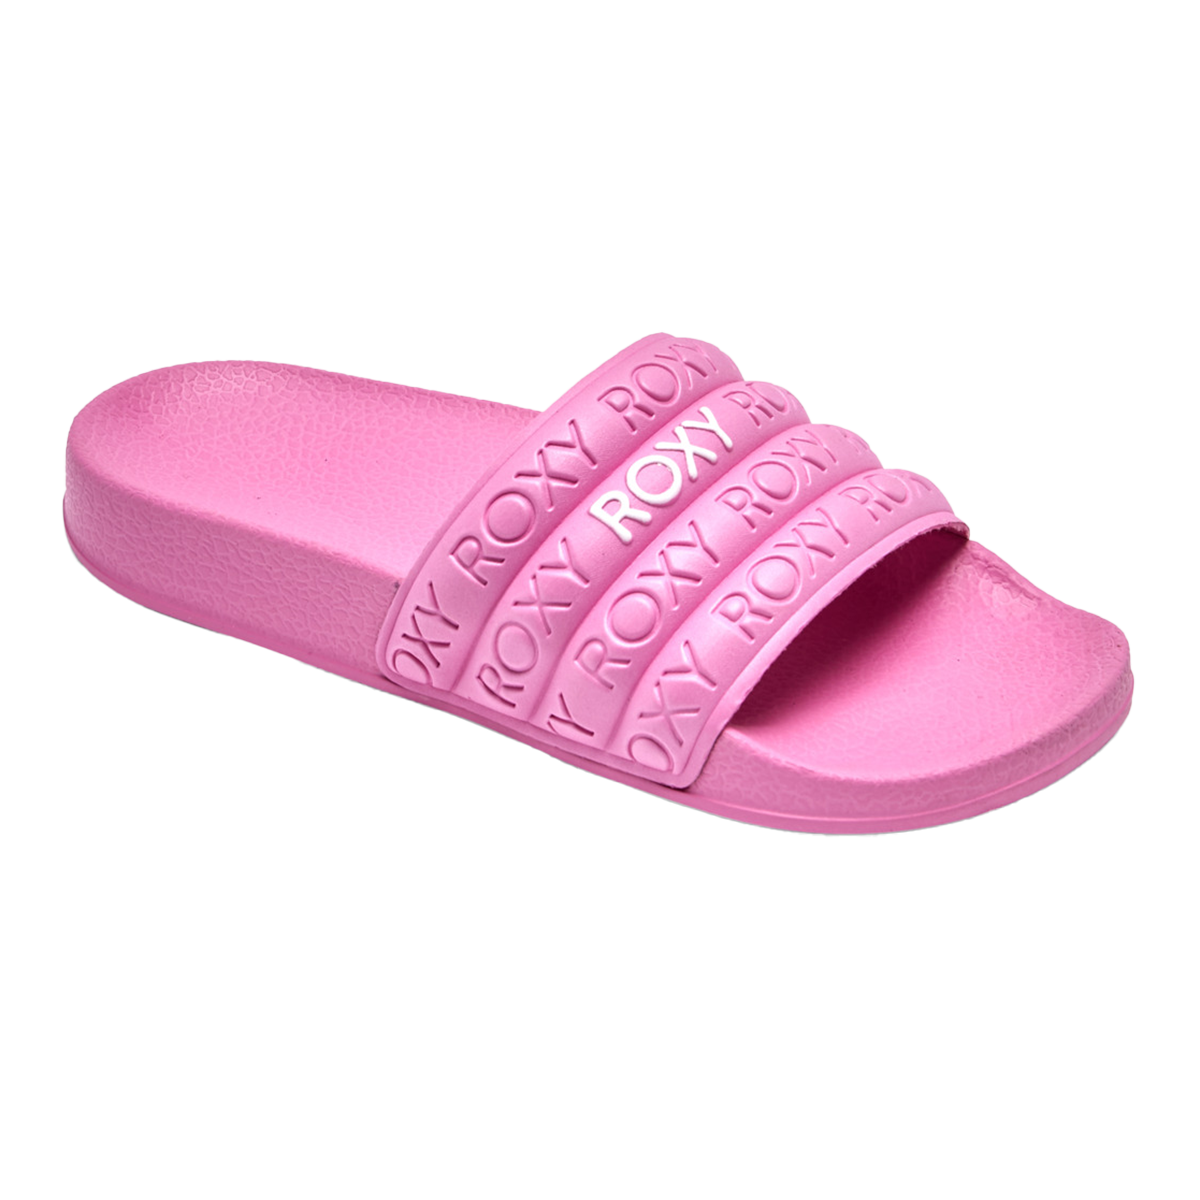 Roxy | Shoes | Roxy Slippy Nina Slide Sandals | Poshmark